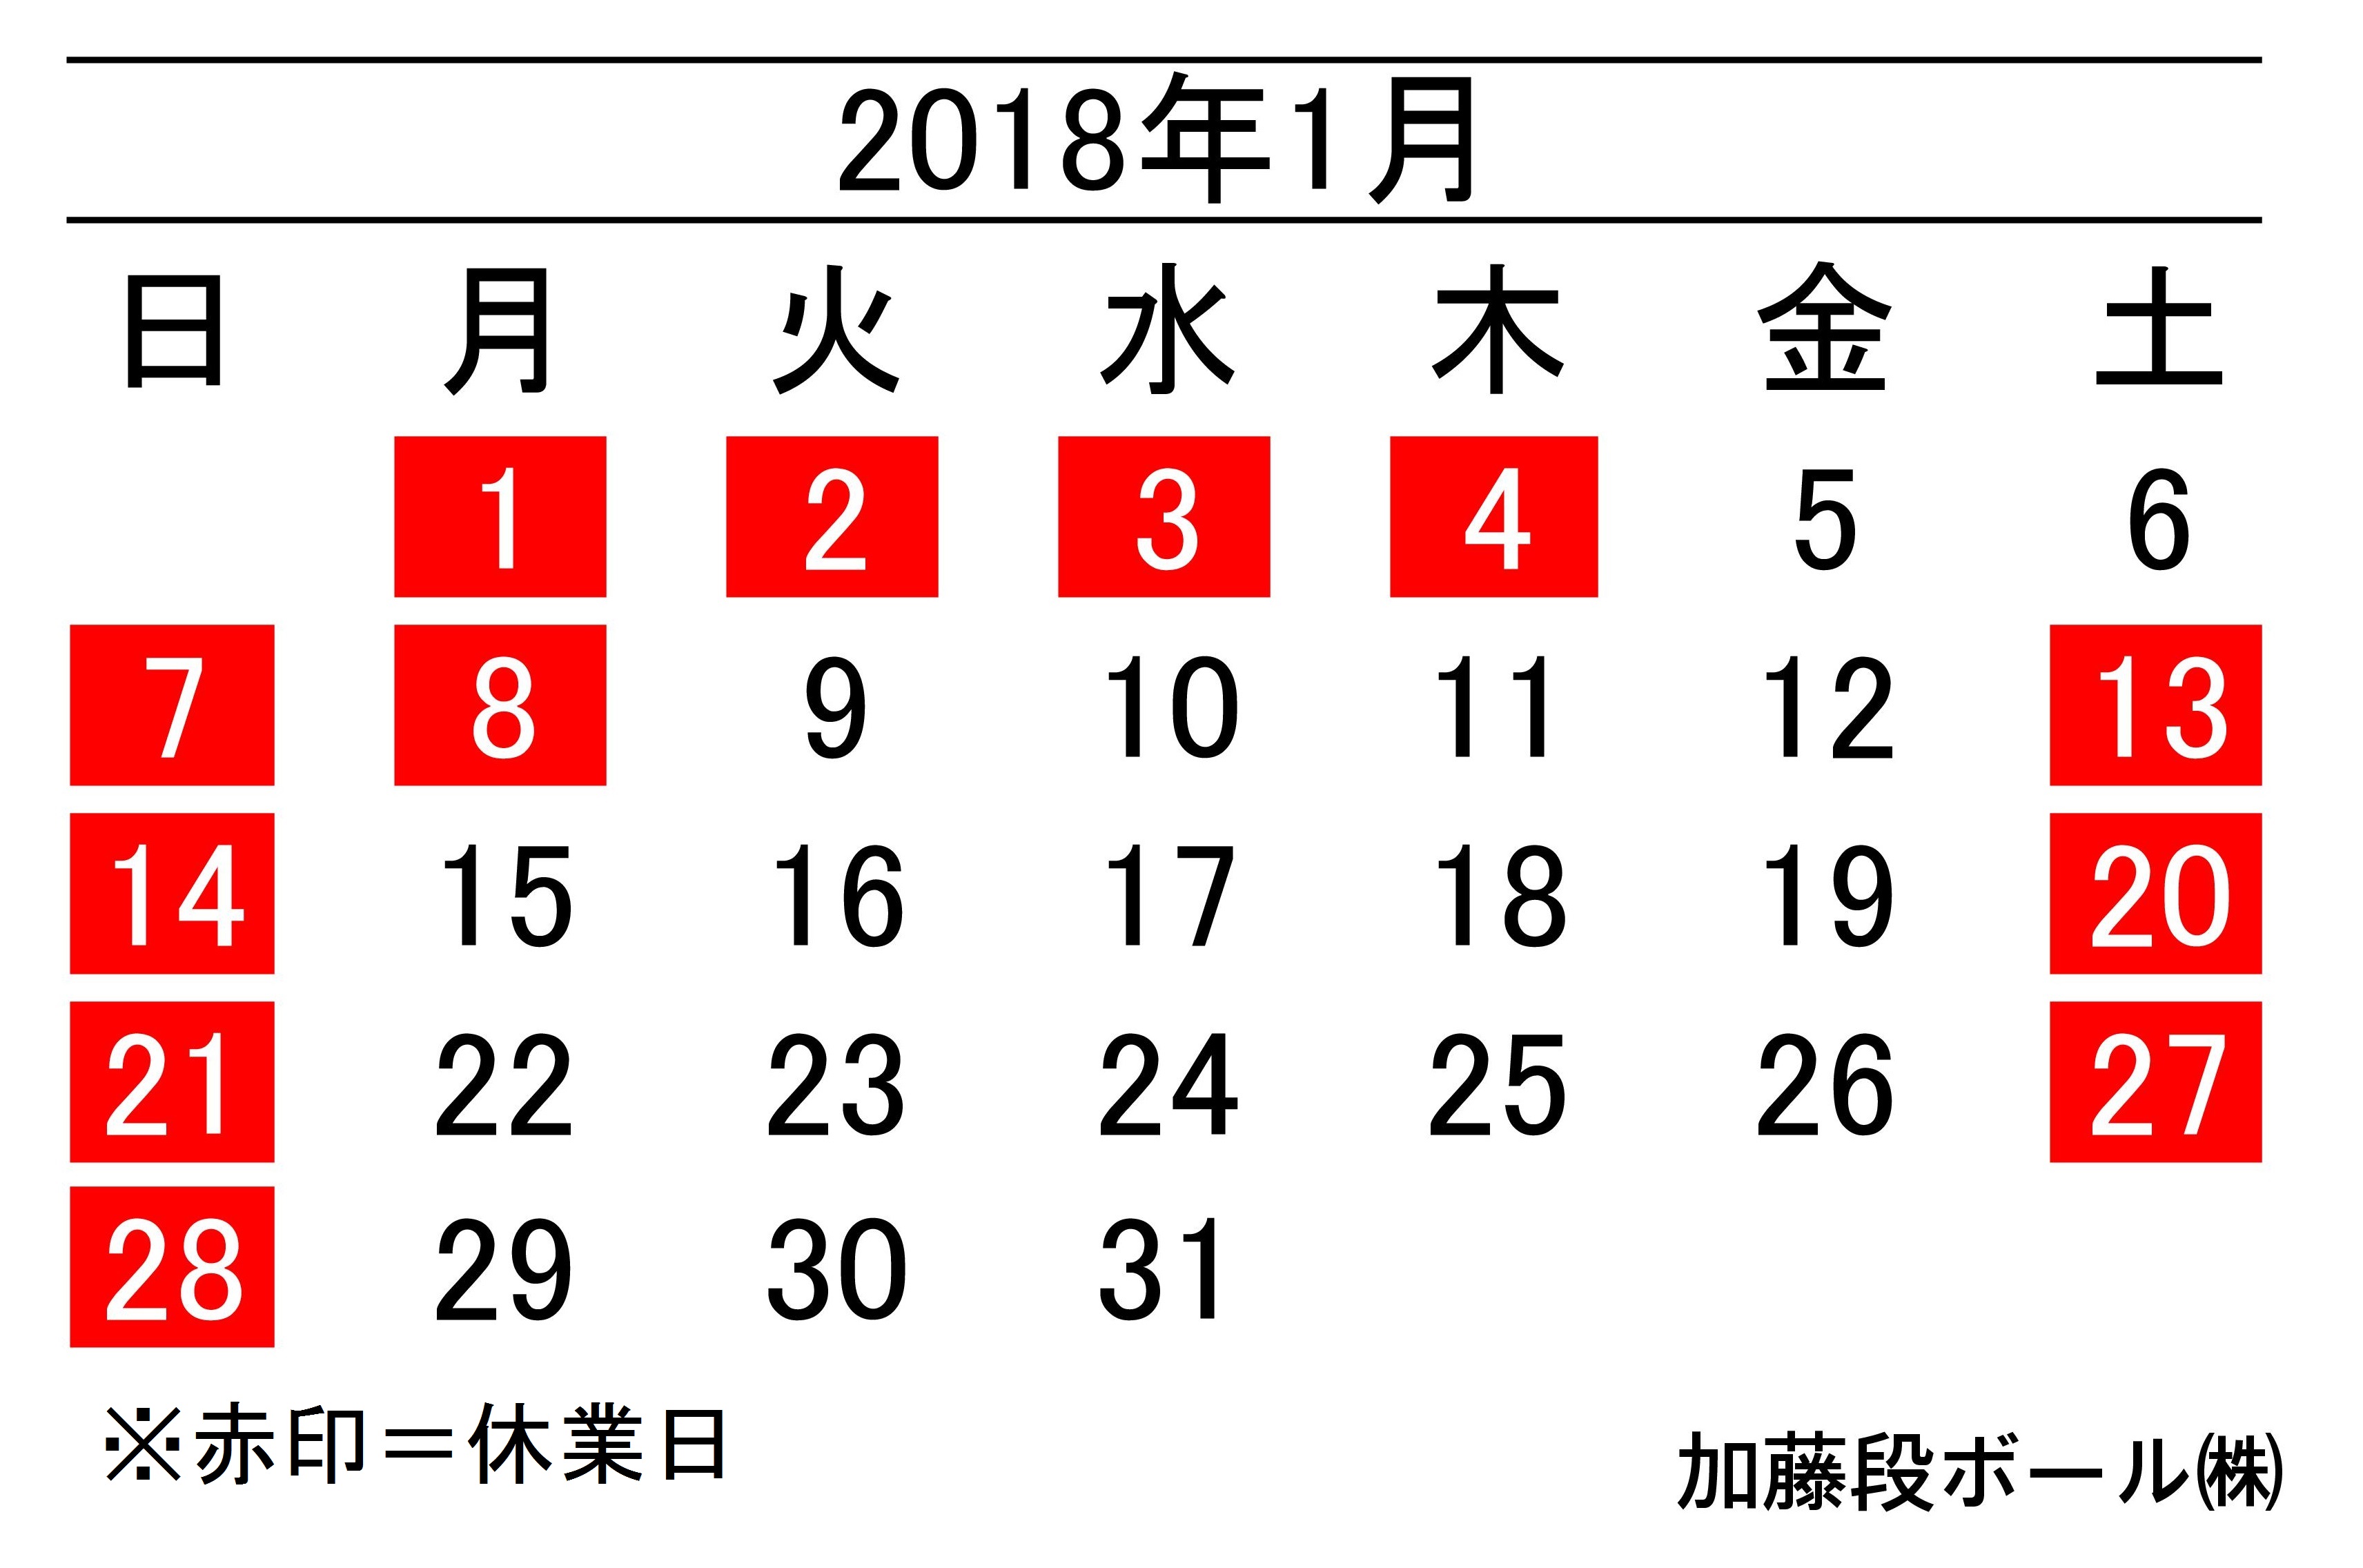 2018年1月度営業日カレンダー 加藤段ボール株式会社 千葉 福島 神奈川を中心に段ボール製品 梱包資材の製造と販売